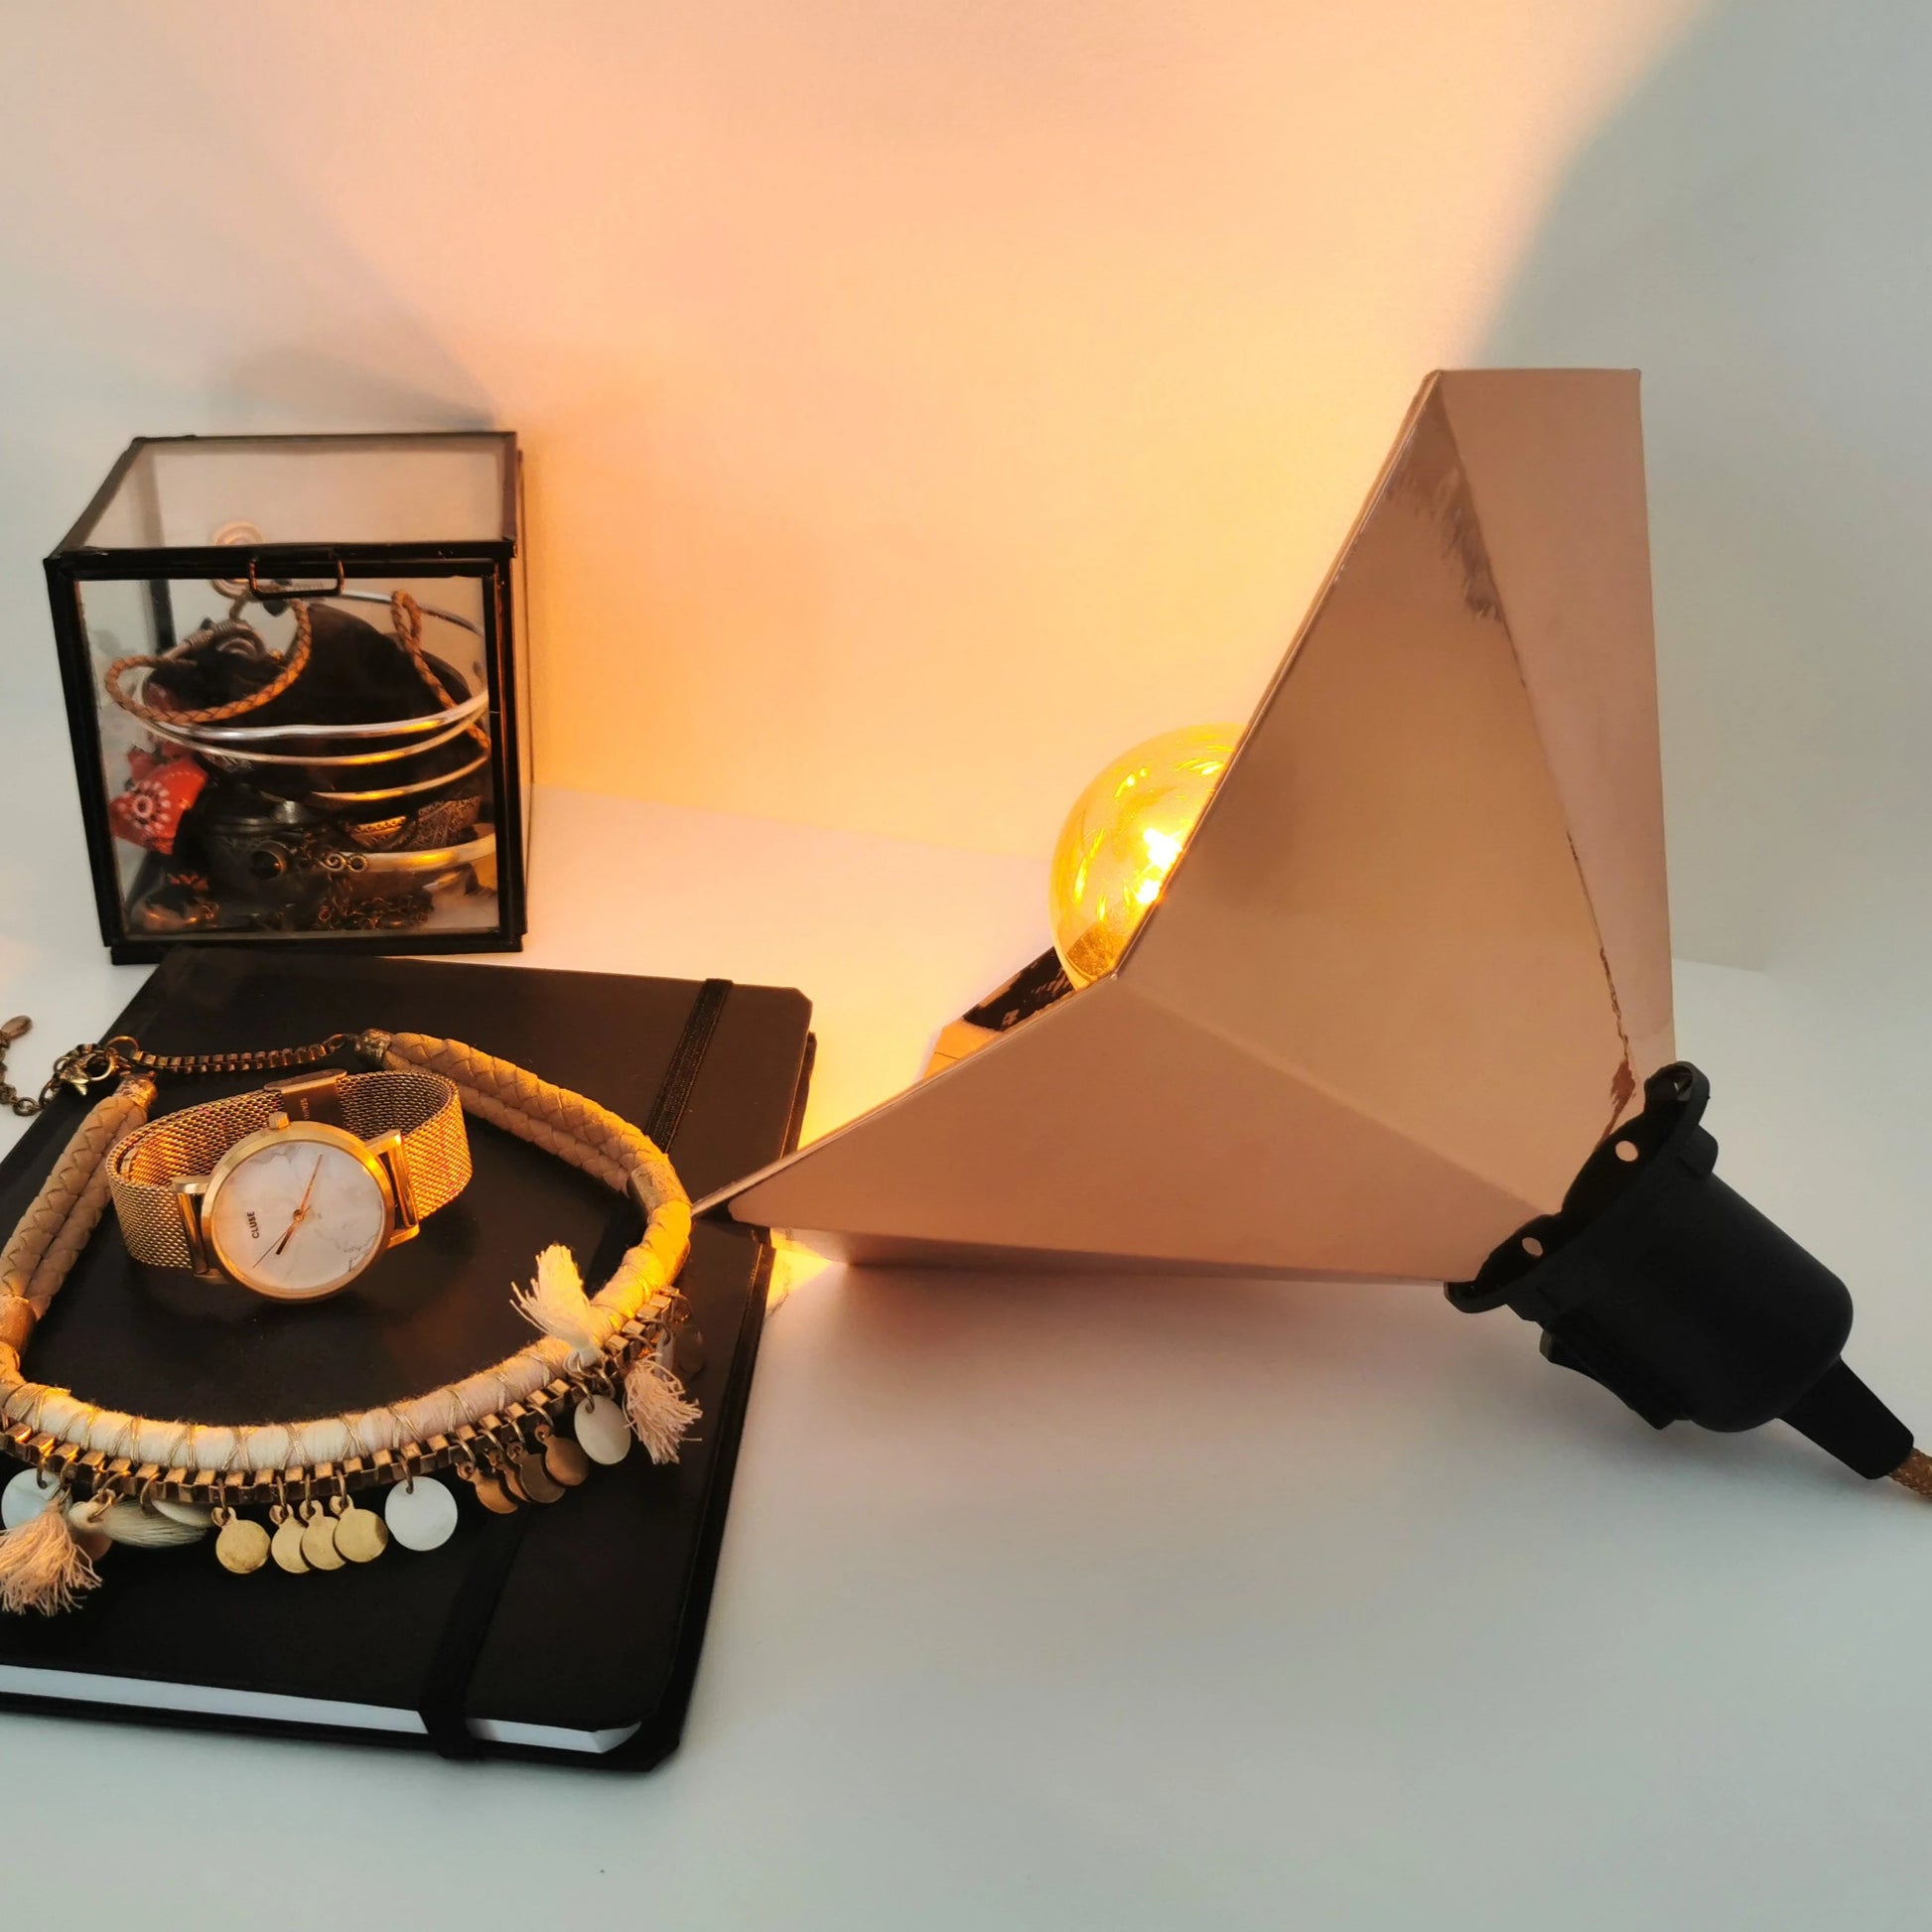 Une Lampe Baladeuse dessiné comme un gramophone de couleur cuivre.